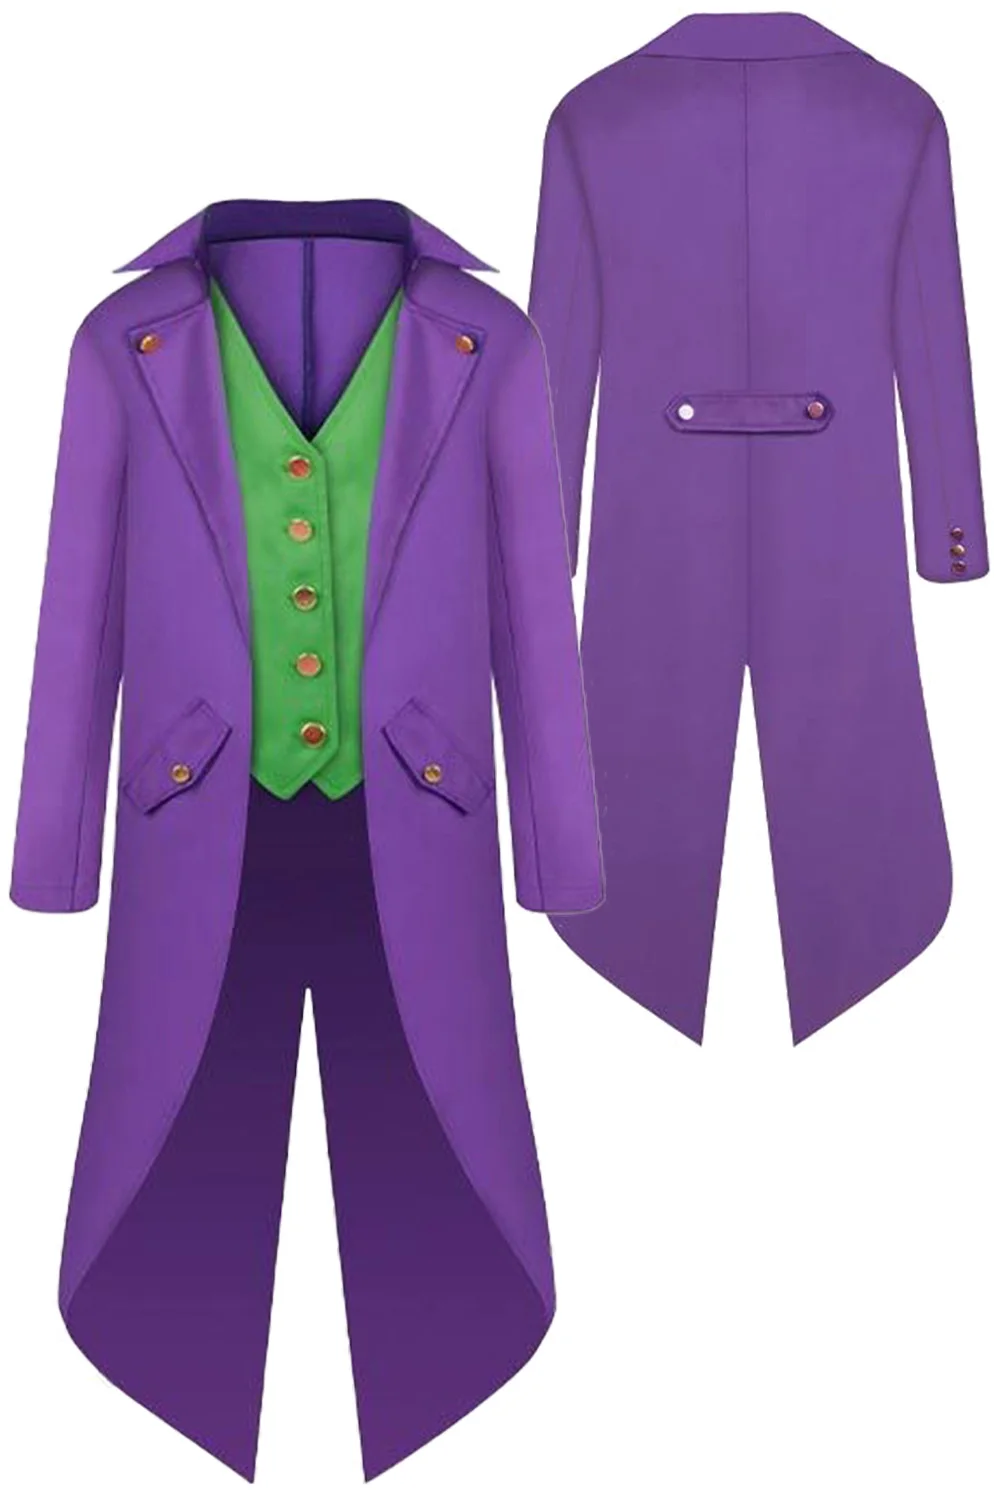 

Костюм для ролевых игр Джокер смокинг пальто жилет костюм из фильма супер злодей костюм для взрослых детей мужчин ролевые игры маскарадная одежда для вечеринок